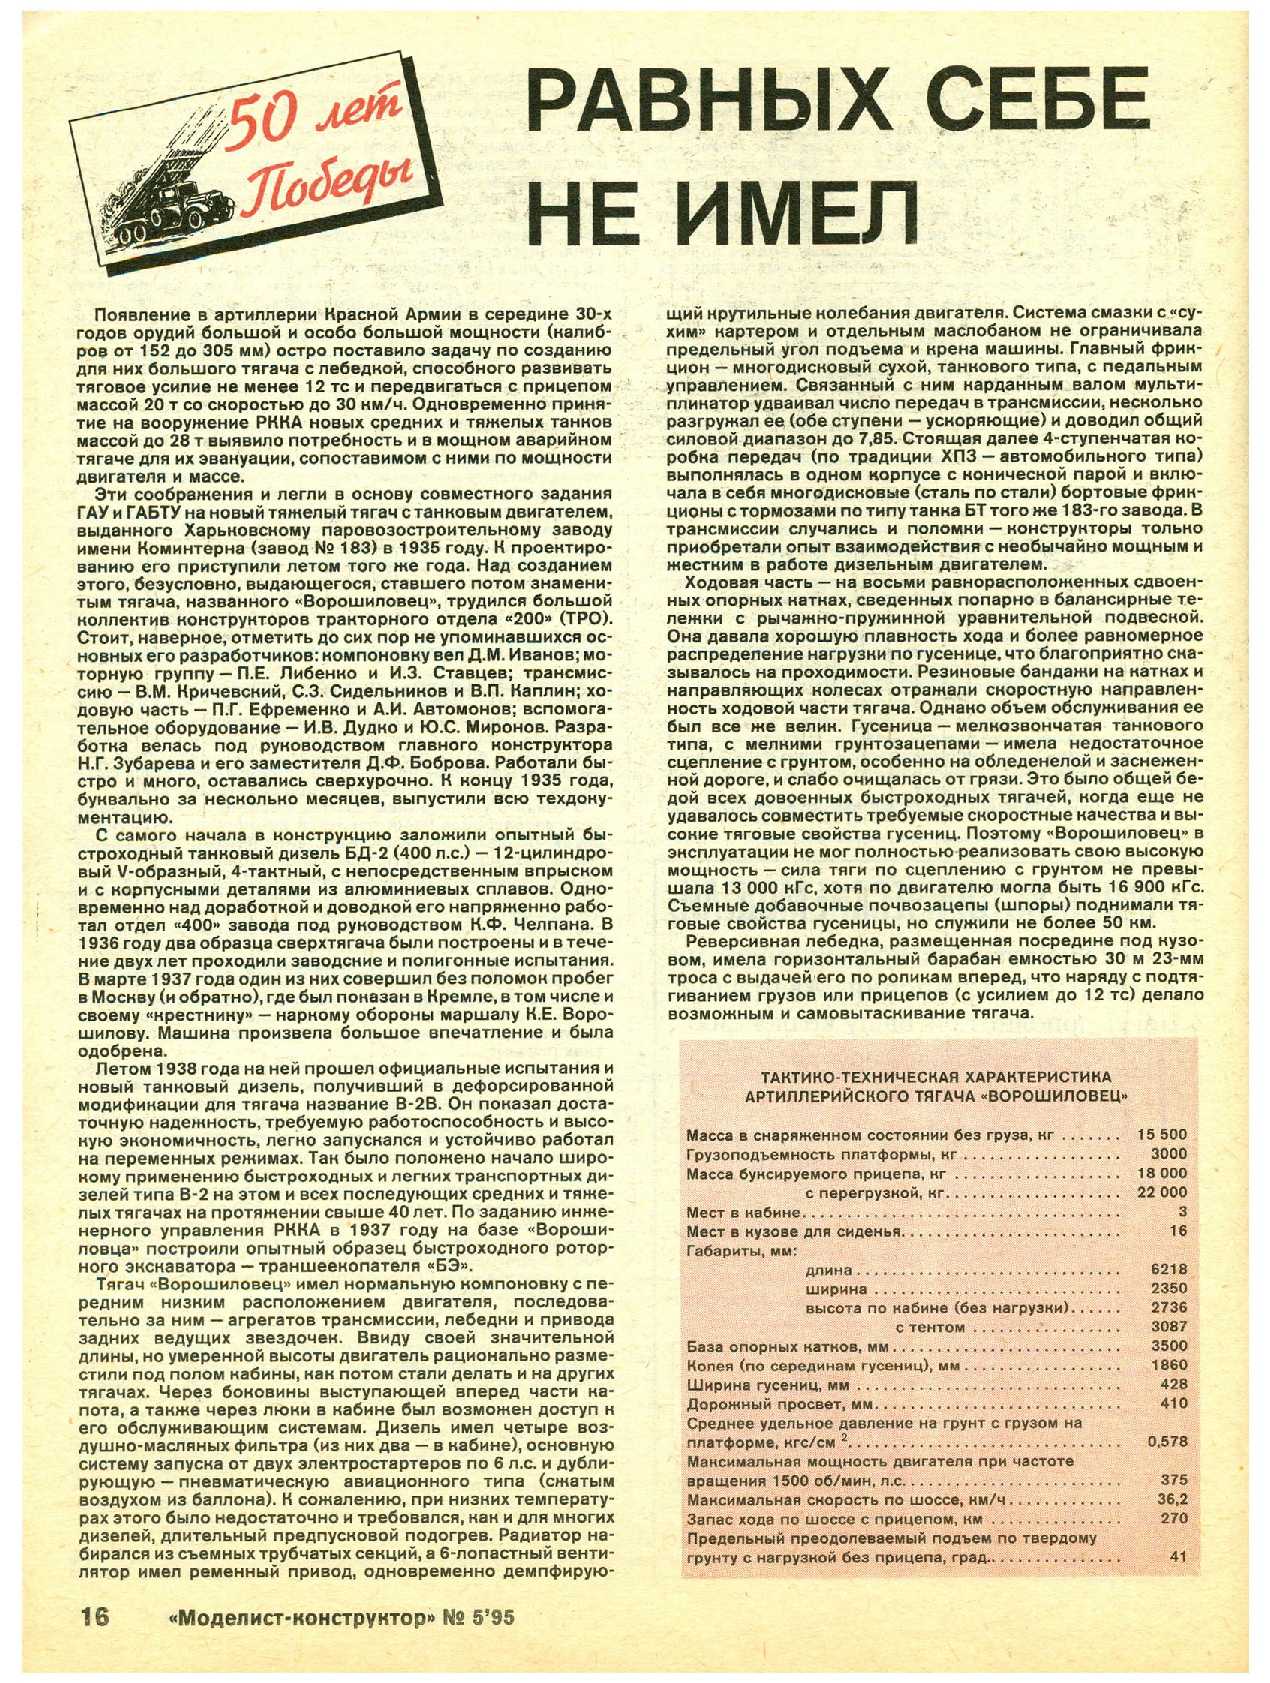 МК 5, 1995, 16 c.